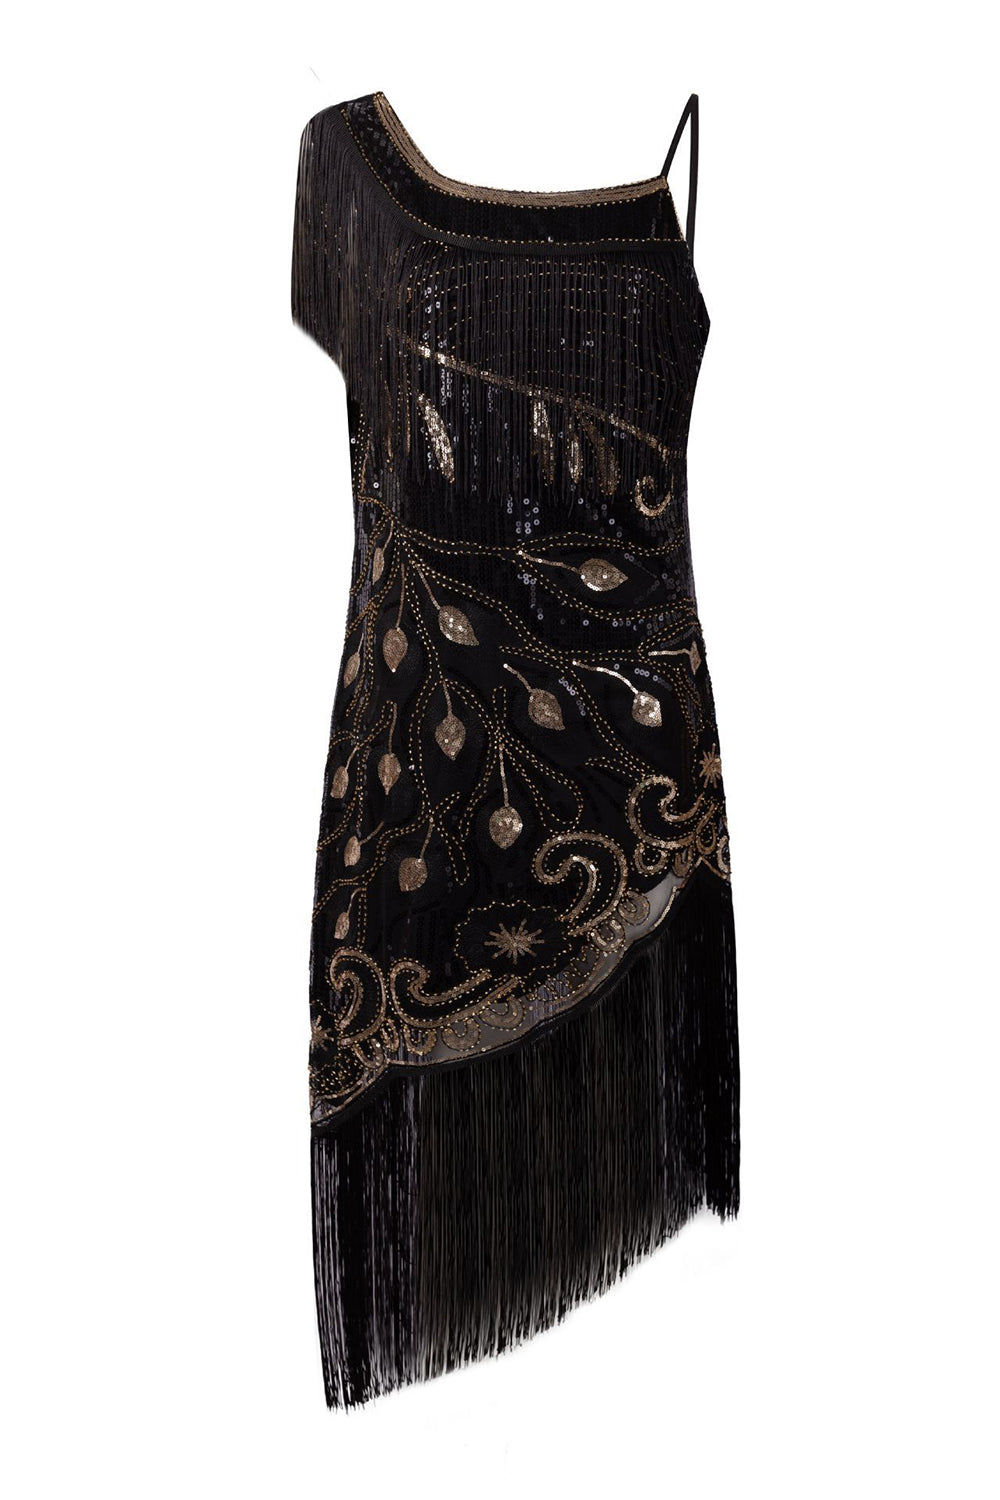 Black One Shoulder 1920s Dress with Fringes